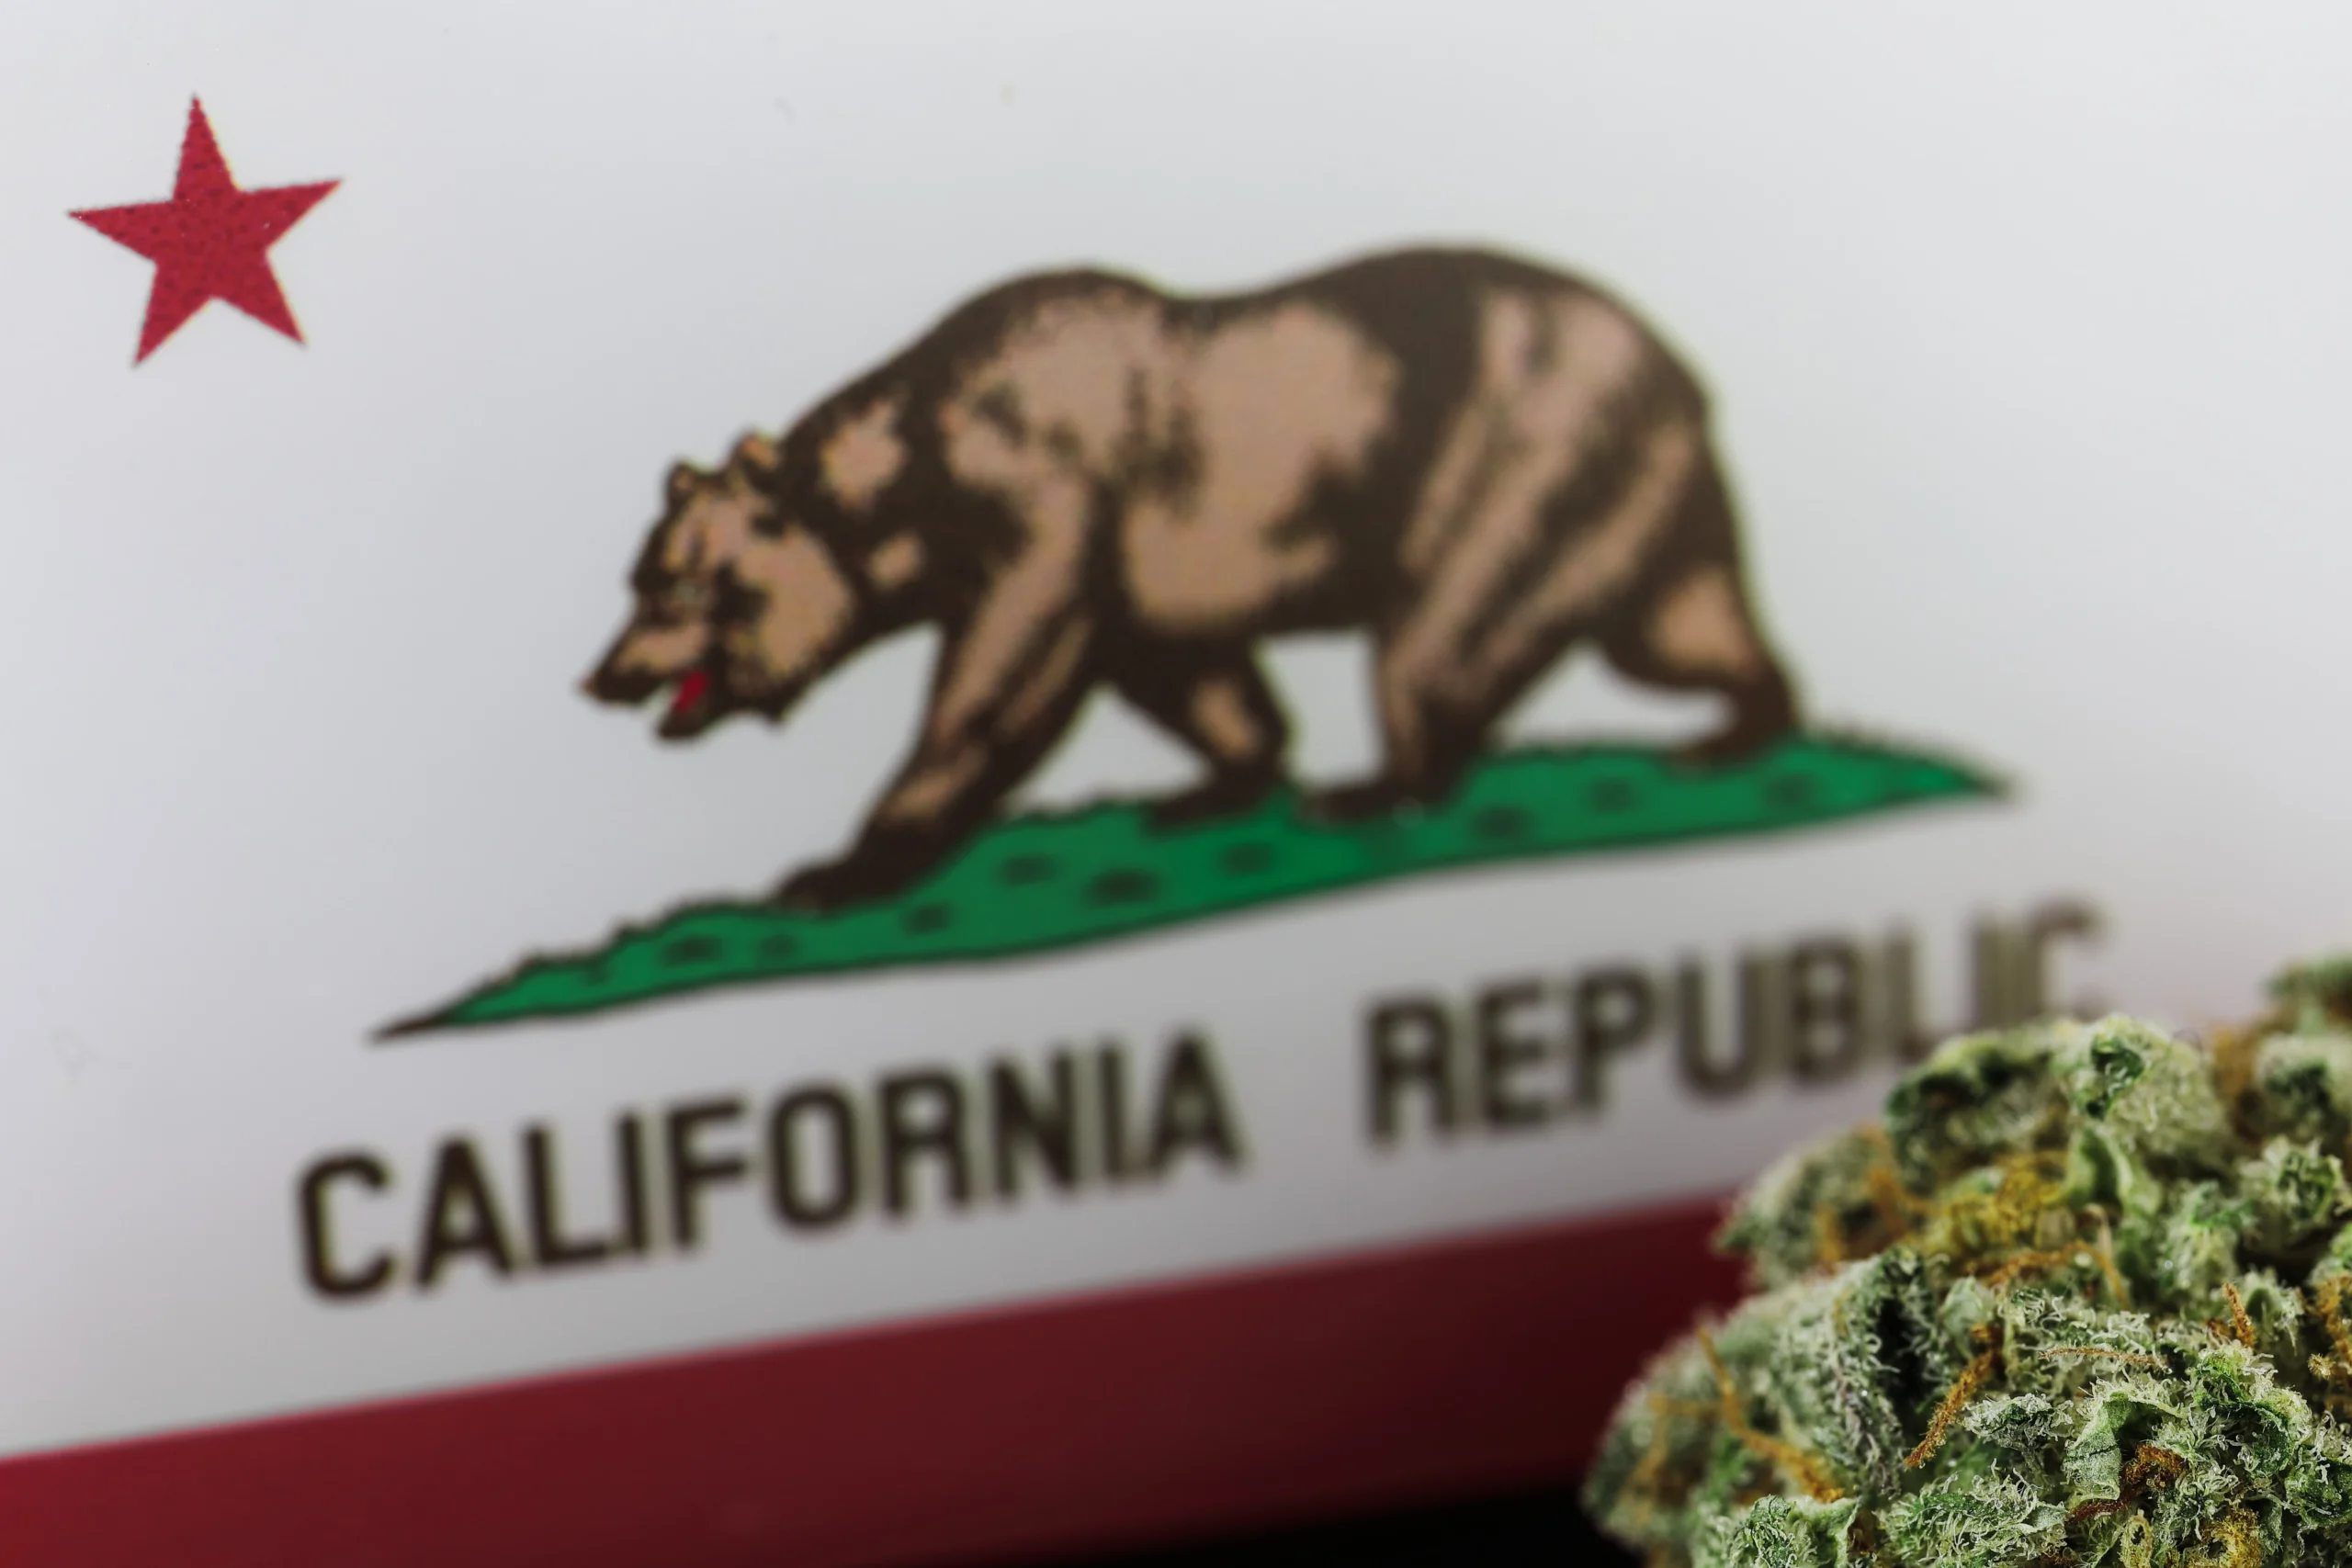 California flag with a Bear and a cannabis plant